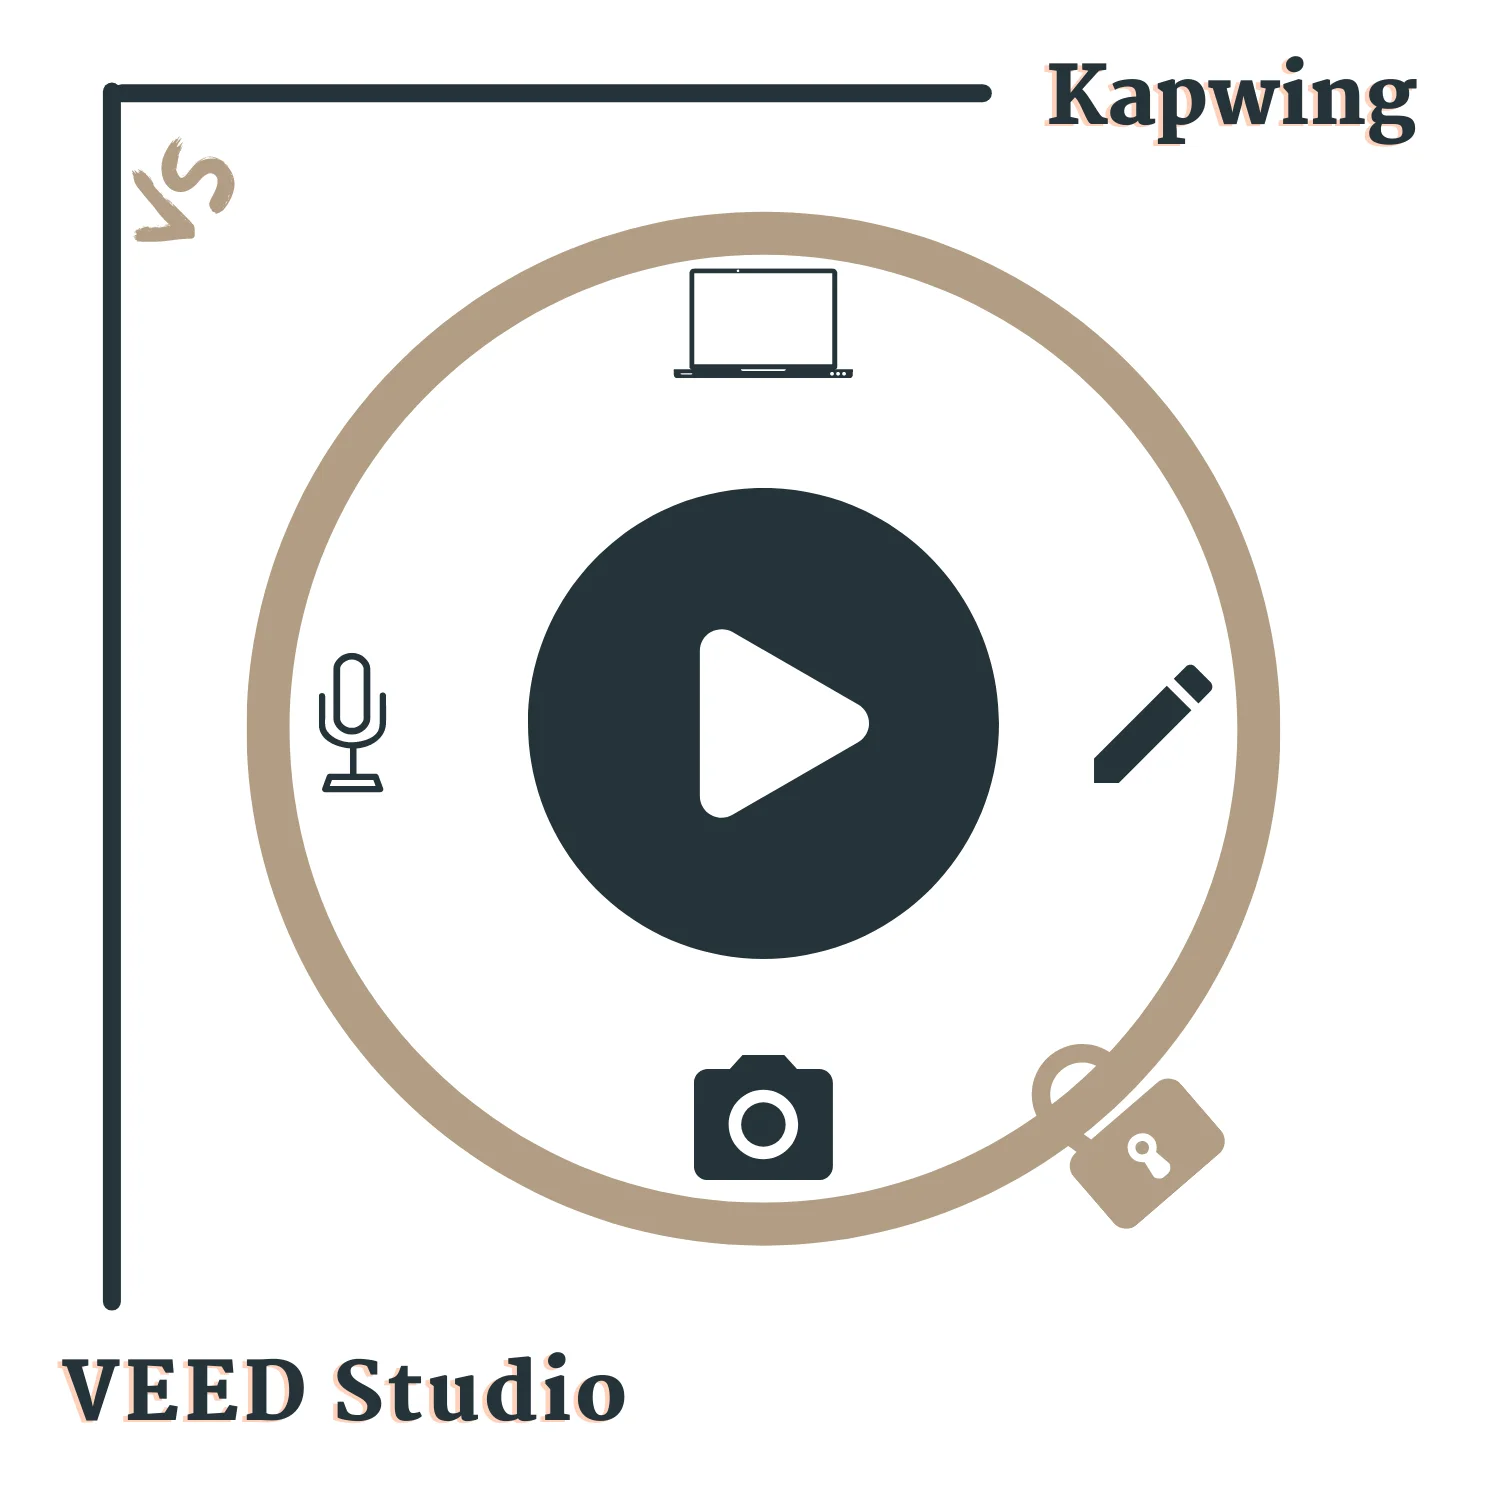 So sánh Kapwing và VEED Studio - Trình chỉnh sửa video trực tuyến tốt nhất: Tham khảo ngay so sánh Kapwing và VEED Studio - Trình chỉnh sửa video trực tuyến tốt nhất để biết thêm thông tin về các công cụ chỉnh sửa video trực tuyến tốt nhất trên thị trường hiện nay. Với đầy đủ tính năng và giao diện dễ sử dụng, bạn có thể tạo ra những tác phẩm video đầy chất lượng chỉ bằng vài cú nhấp chuột.